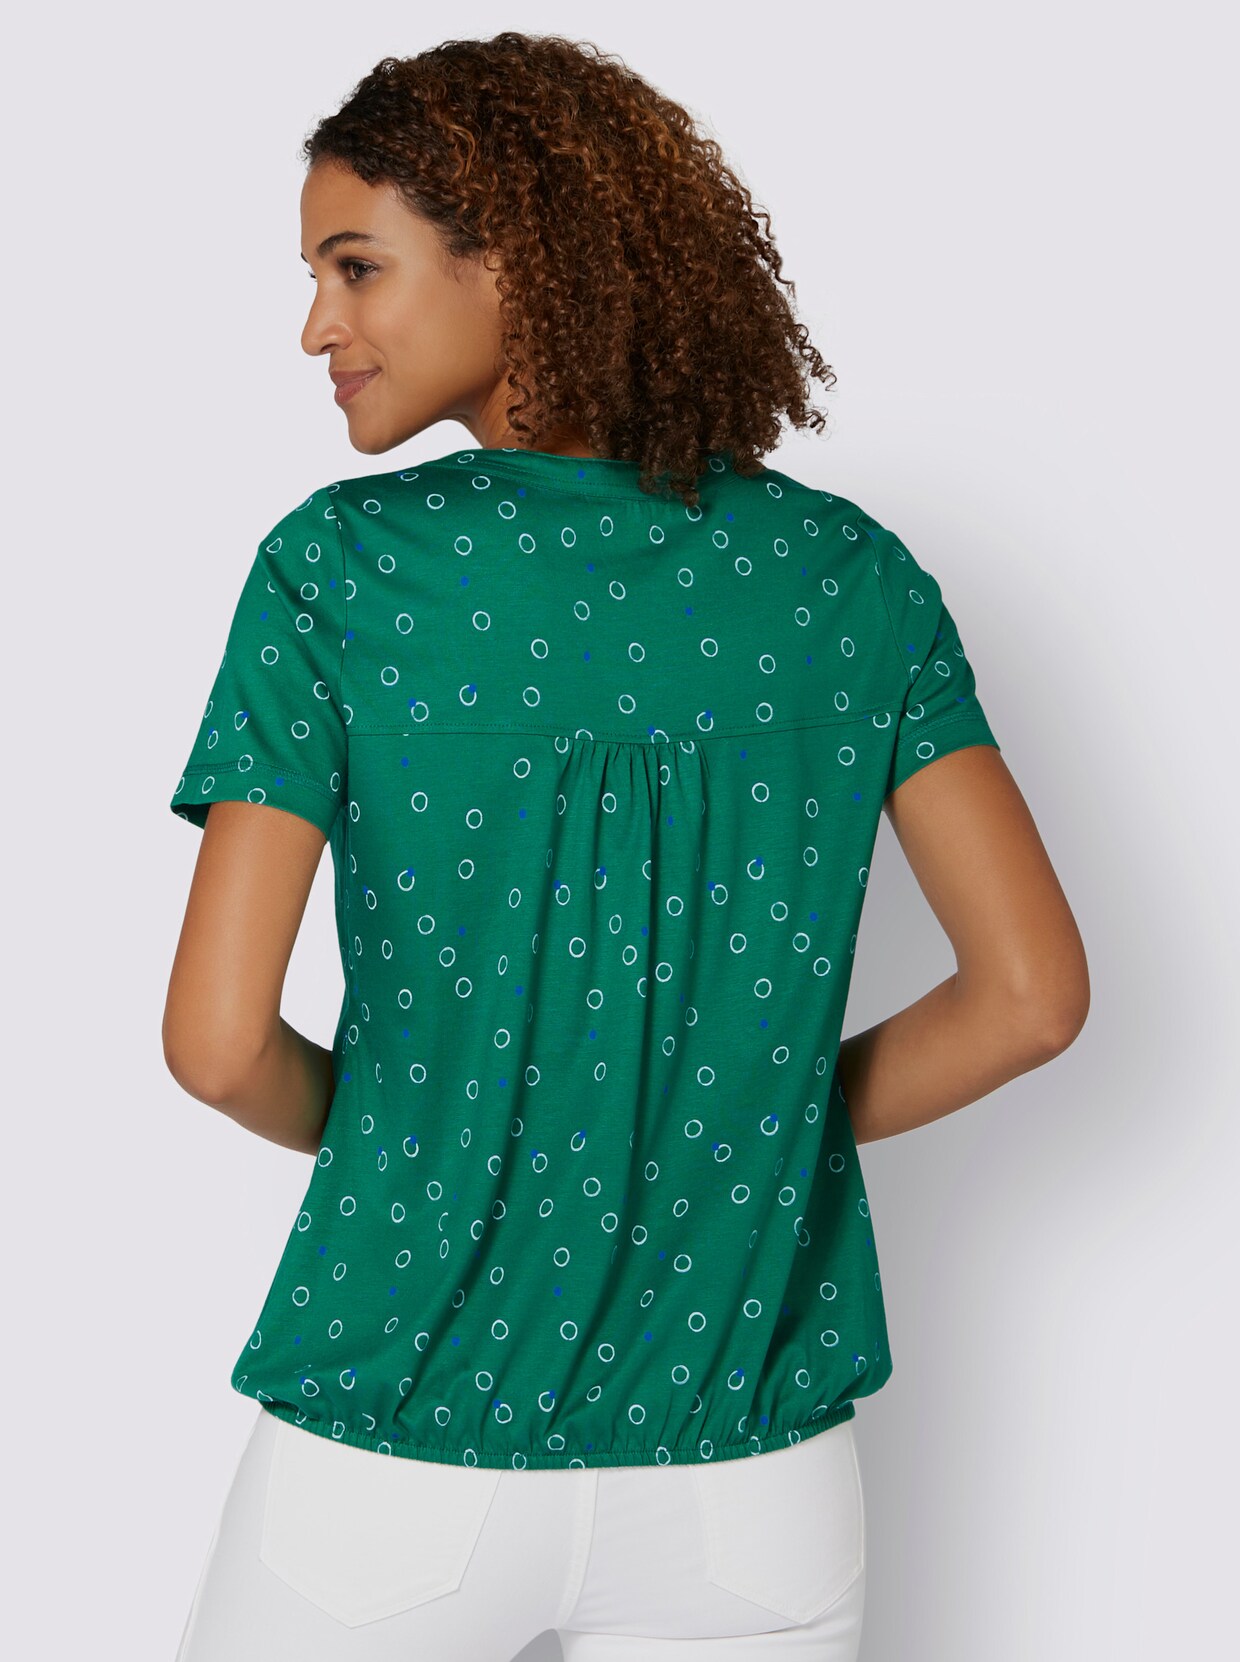 Print-Shirt - grün-weiß-bedruckt